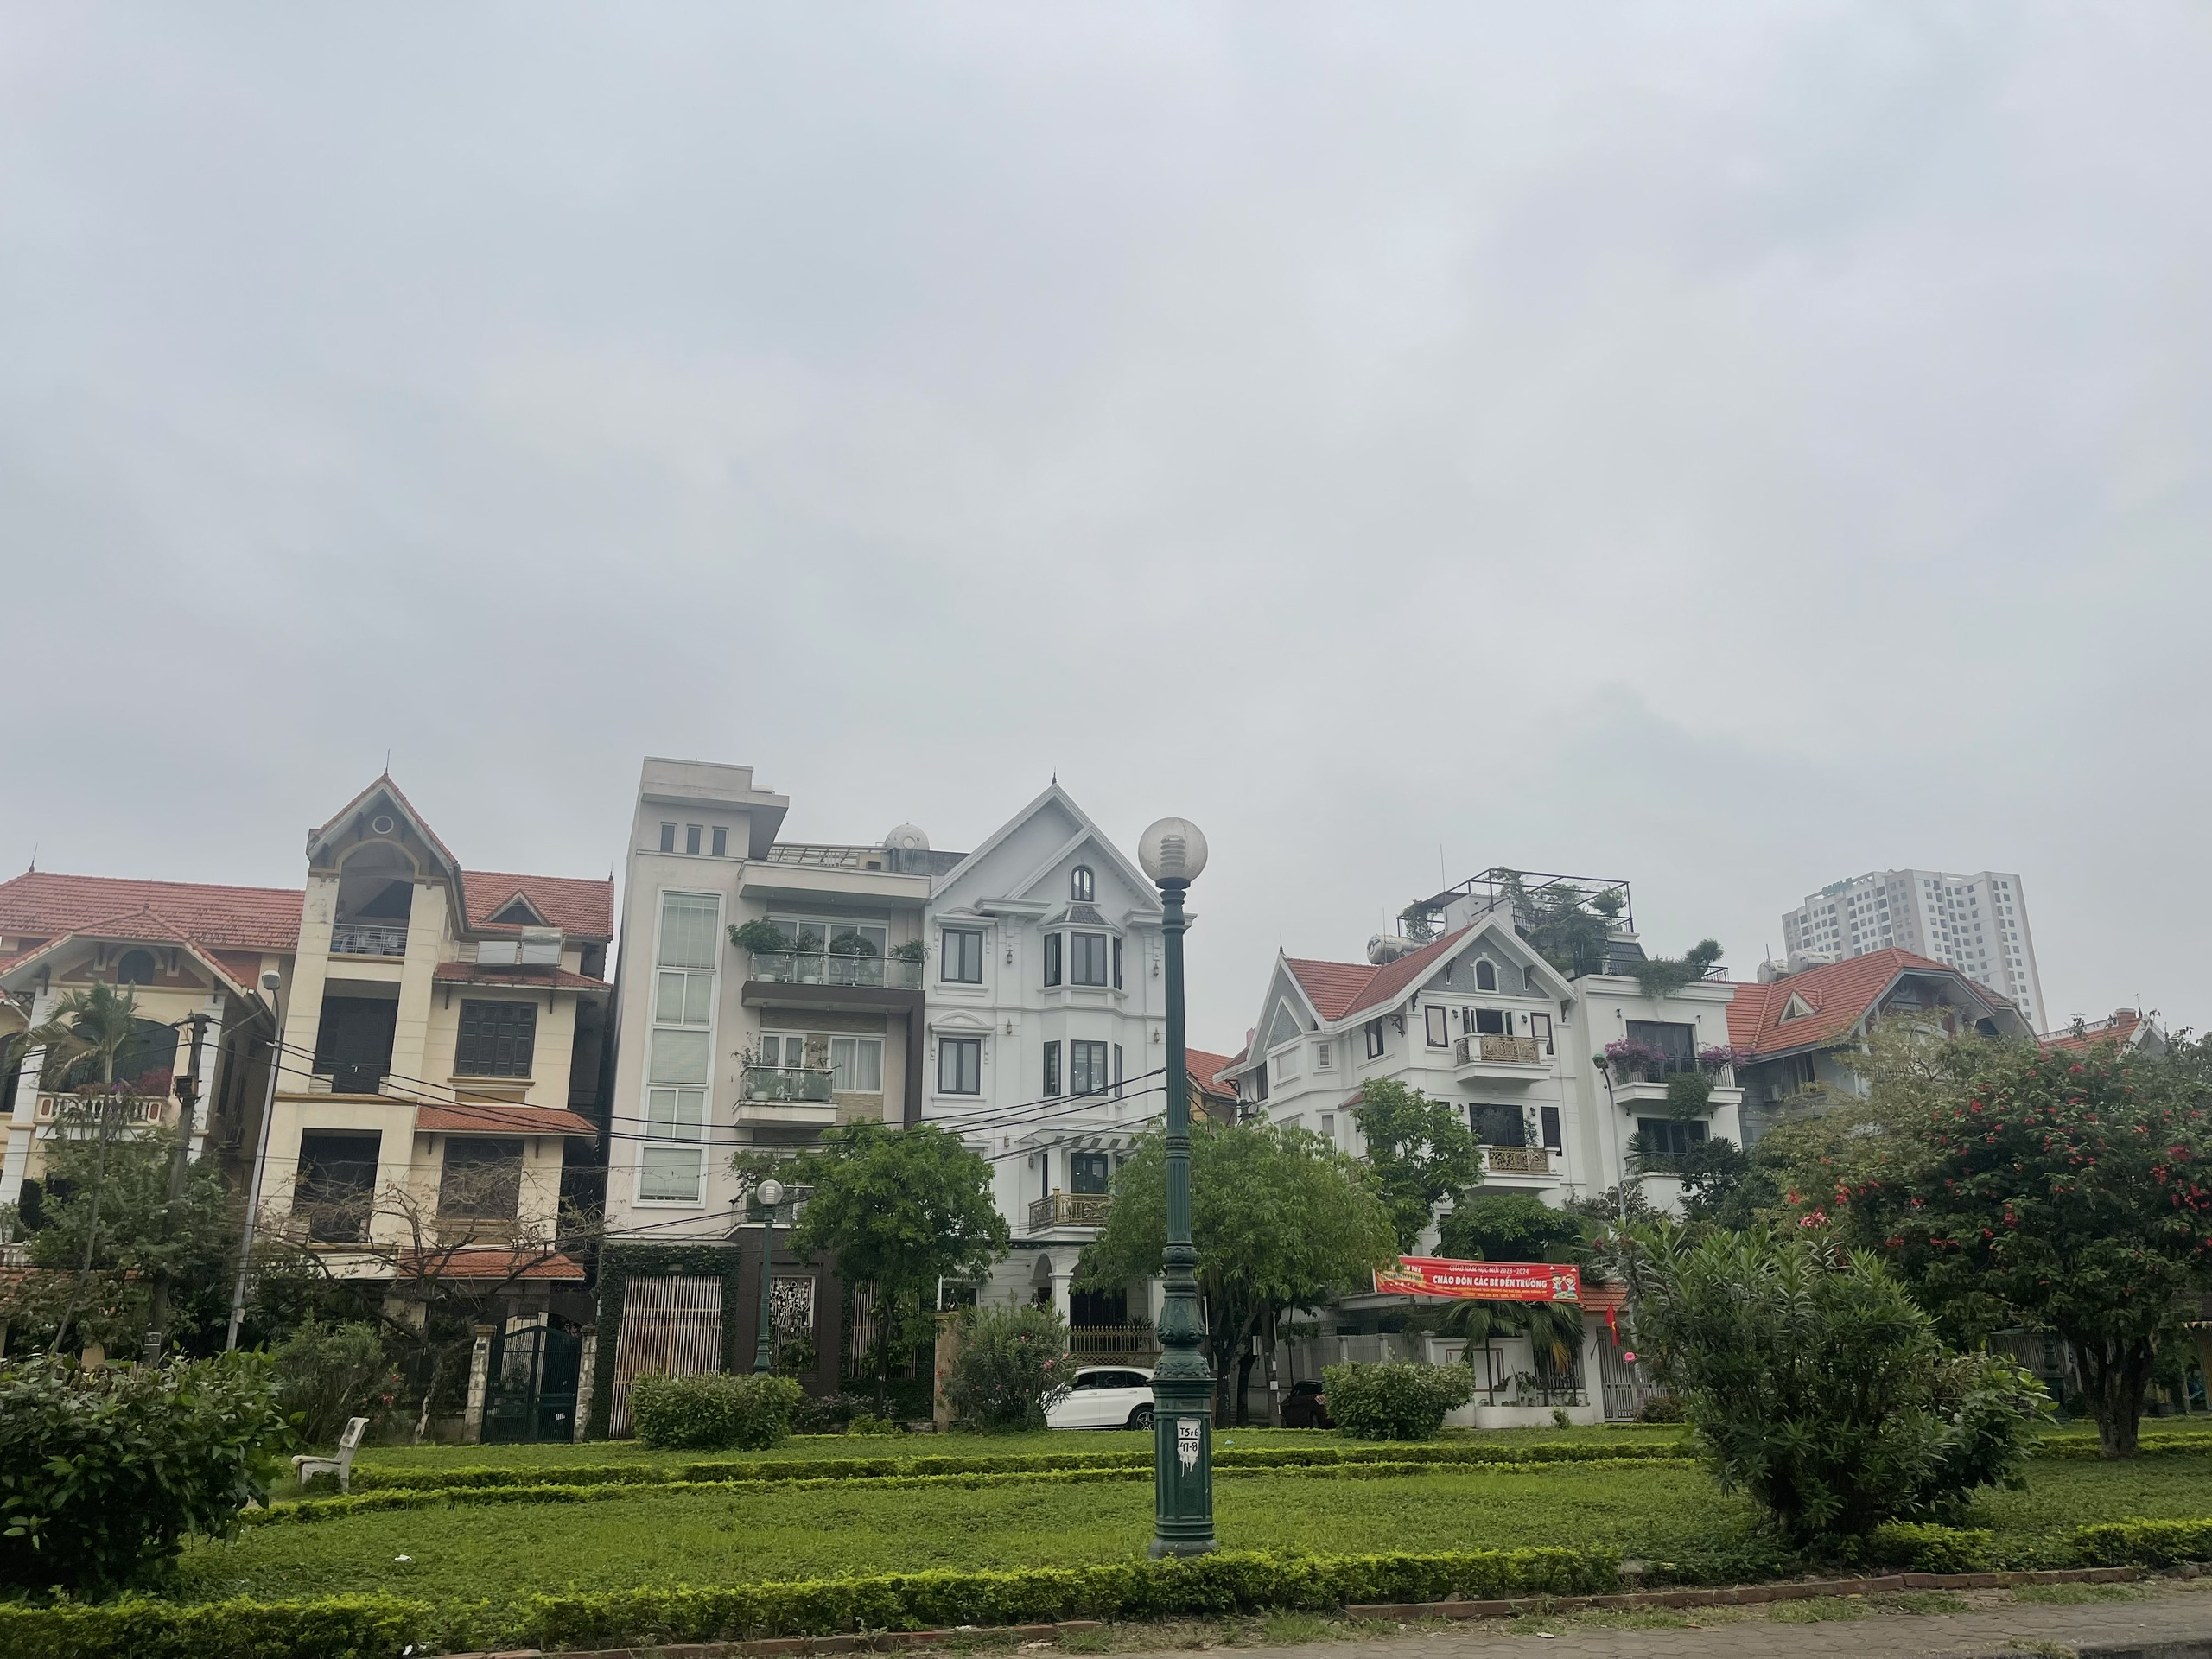 (GẤP) (HIẾM) Bán nhà phố Minh Khai - Hai Bà Trưng, ô tô tránh, vỉa hè, 103m2, mặt tiền rộng, 37 tỷ - Ảnh chính